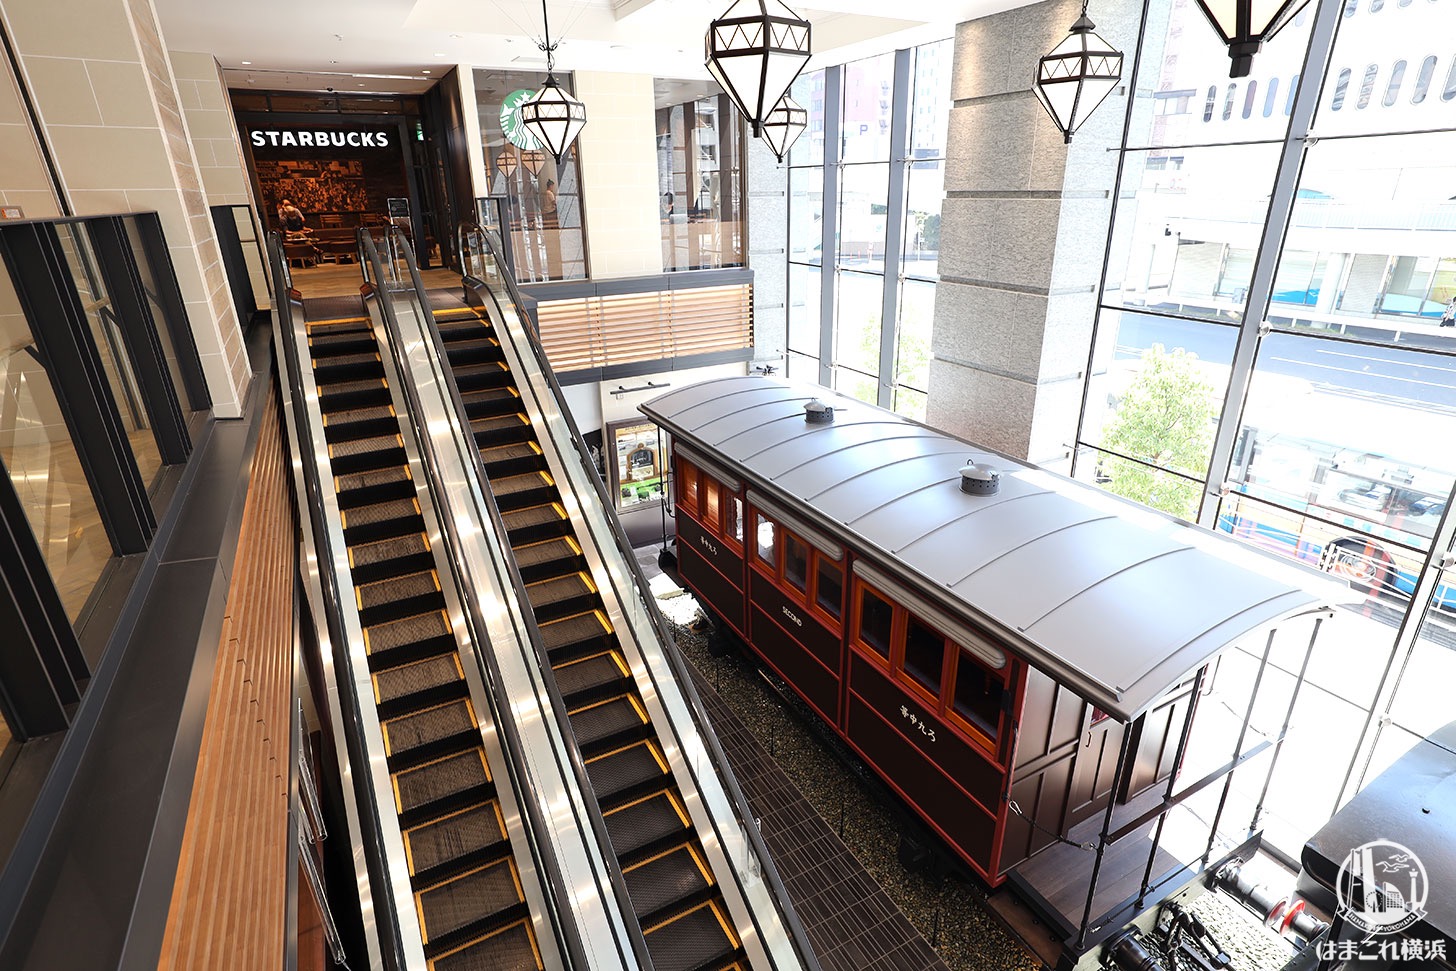 旧横濱鉄道歴史展示「旧横ギャラリー」に展示中の上から見た110形蒸気機関車